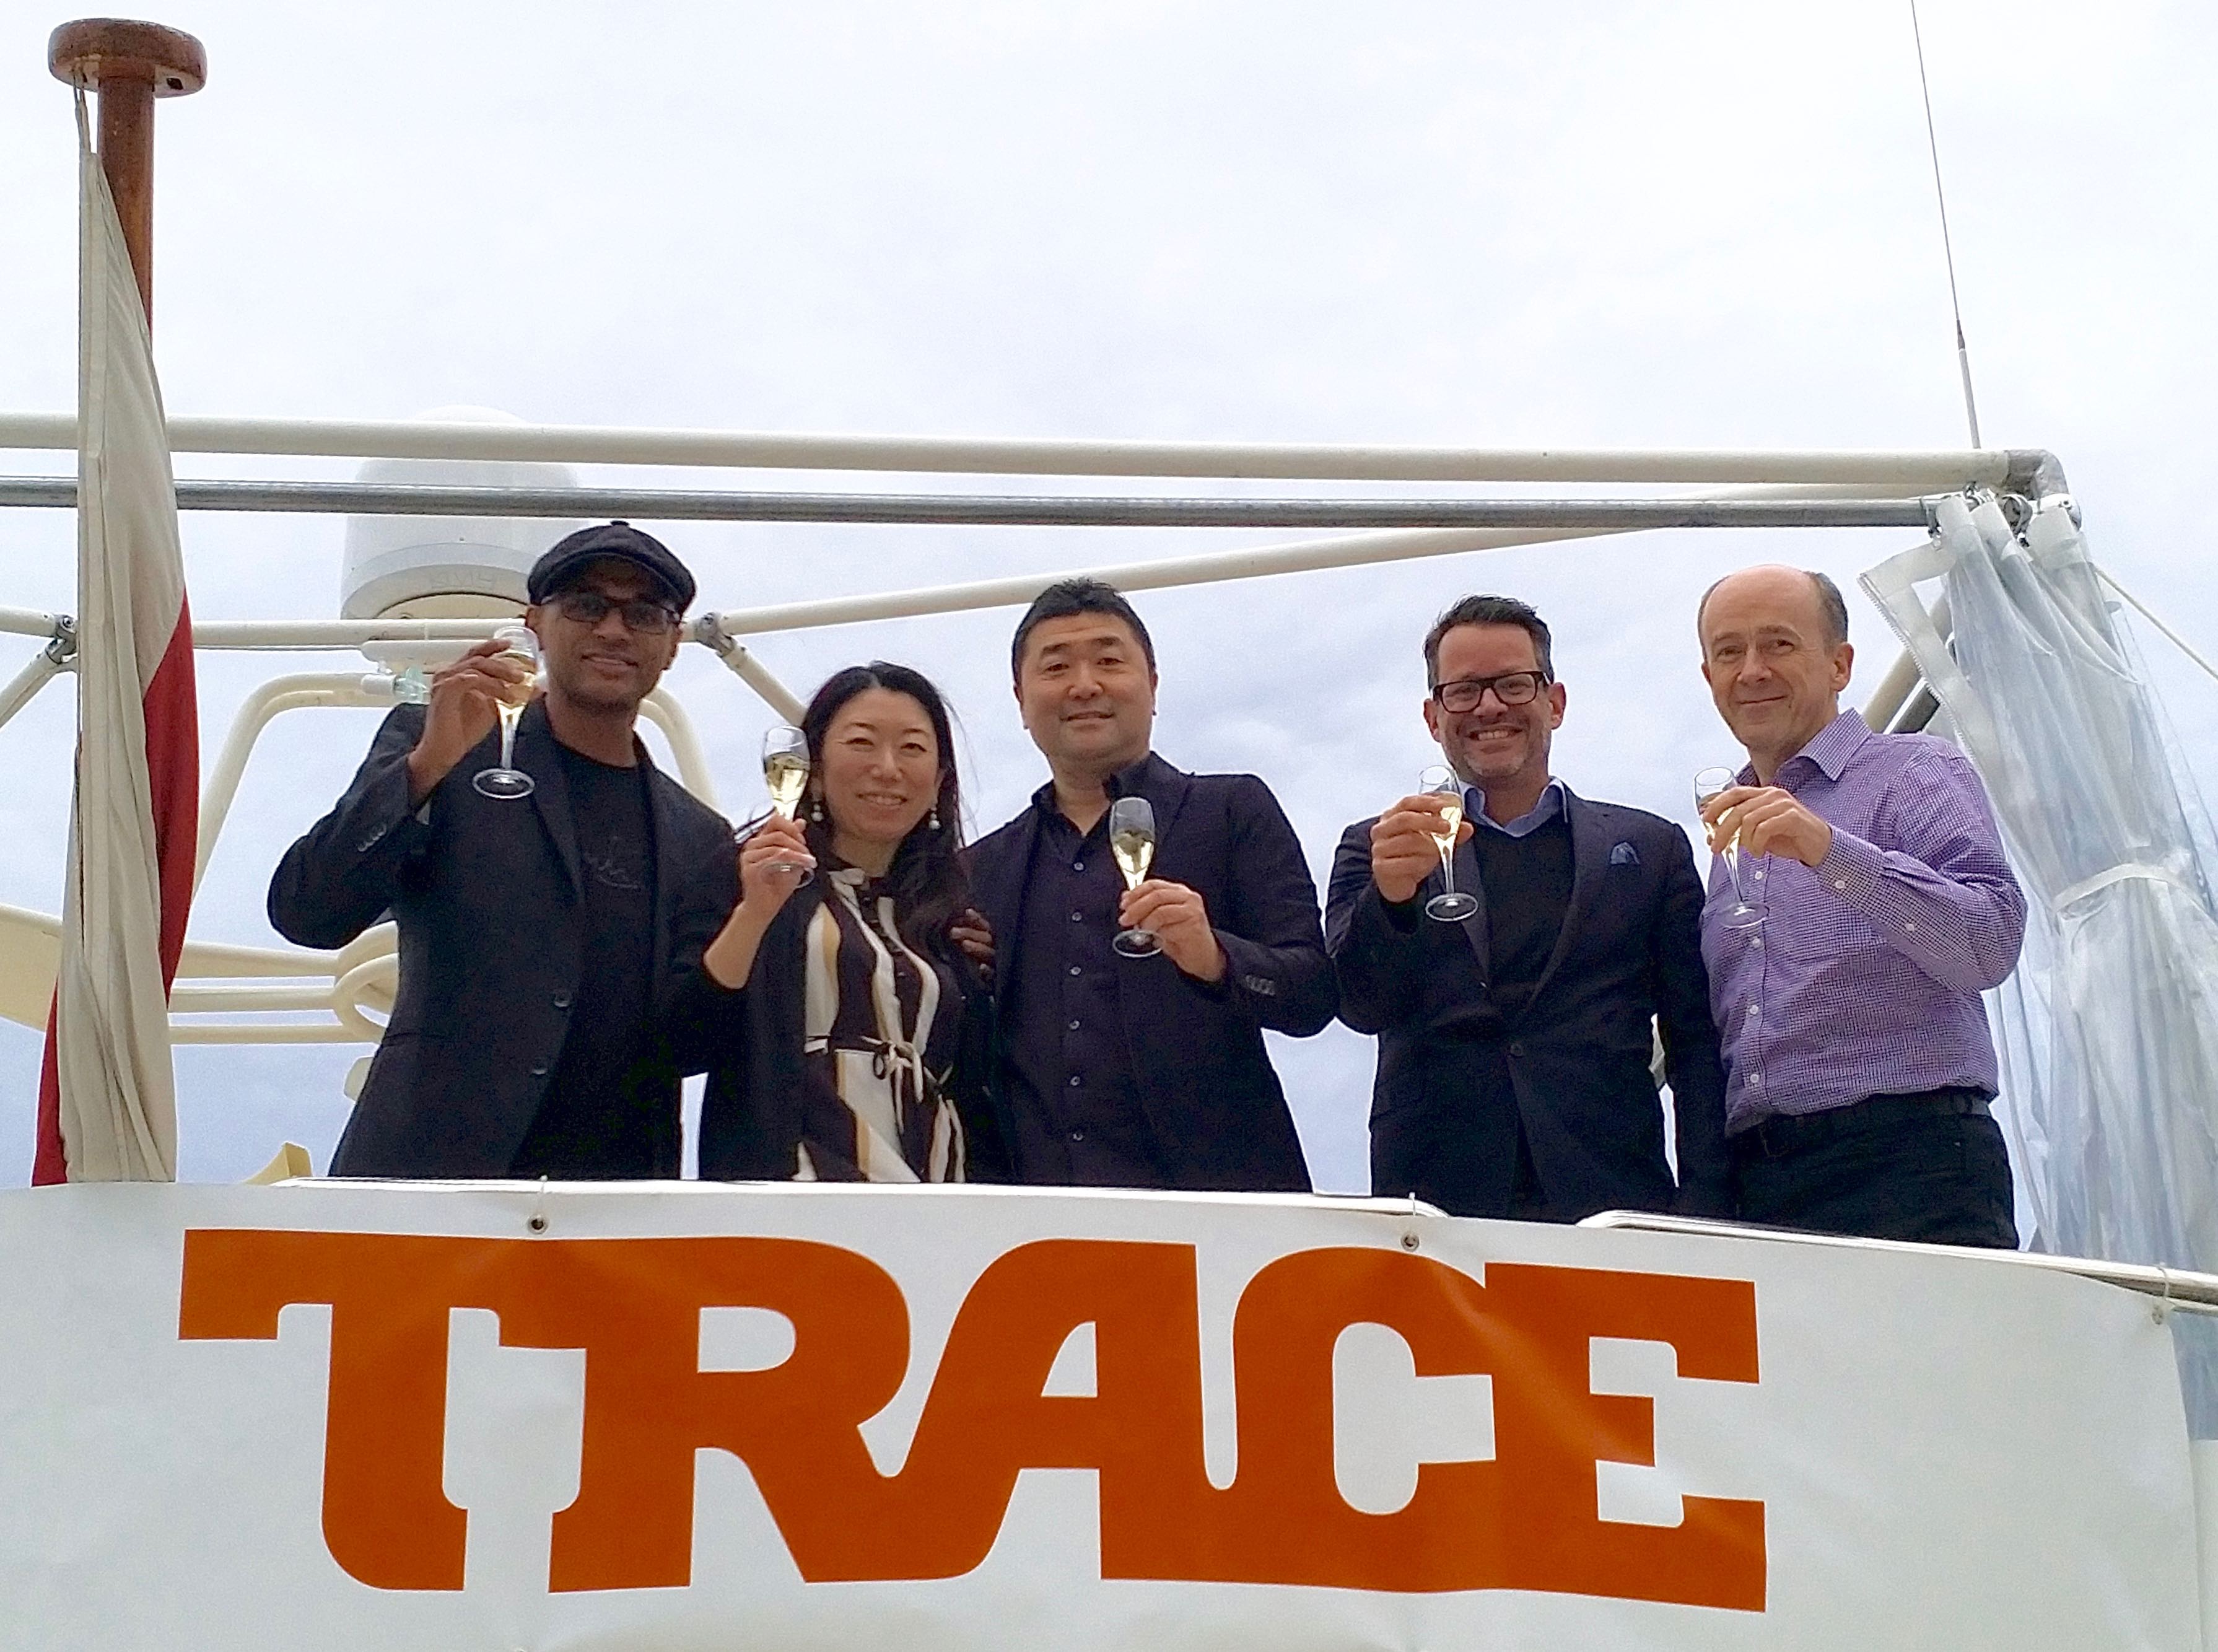 TRACE lance trois chaînes au Japon